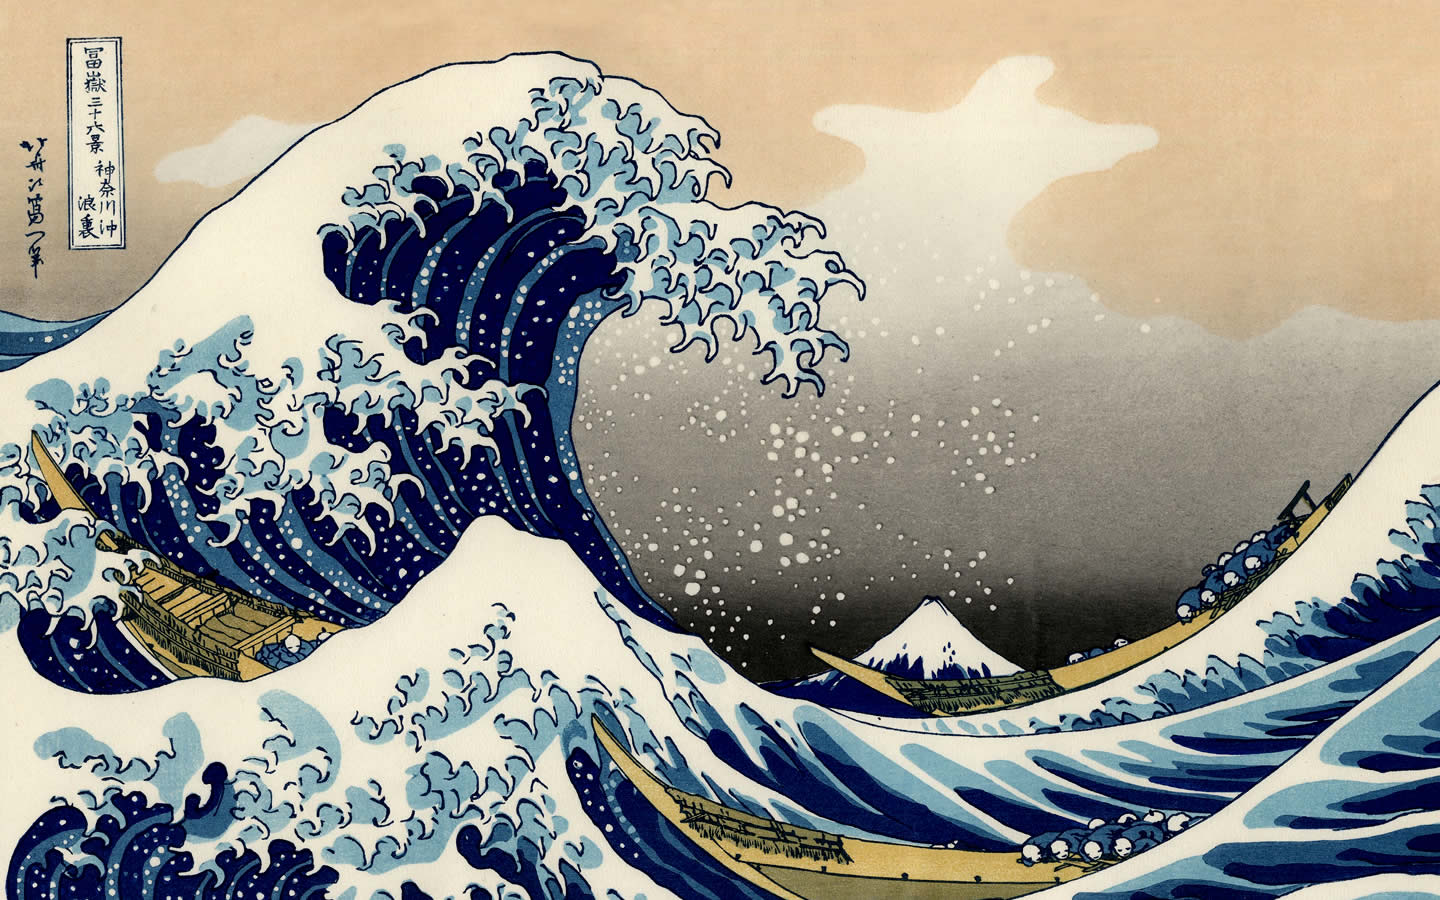 Hokusai Katsushika Wallpaper The Great Wave at Kanagawa